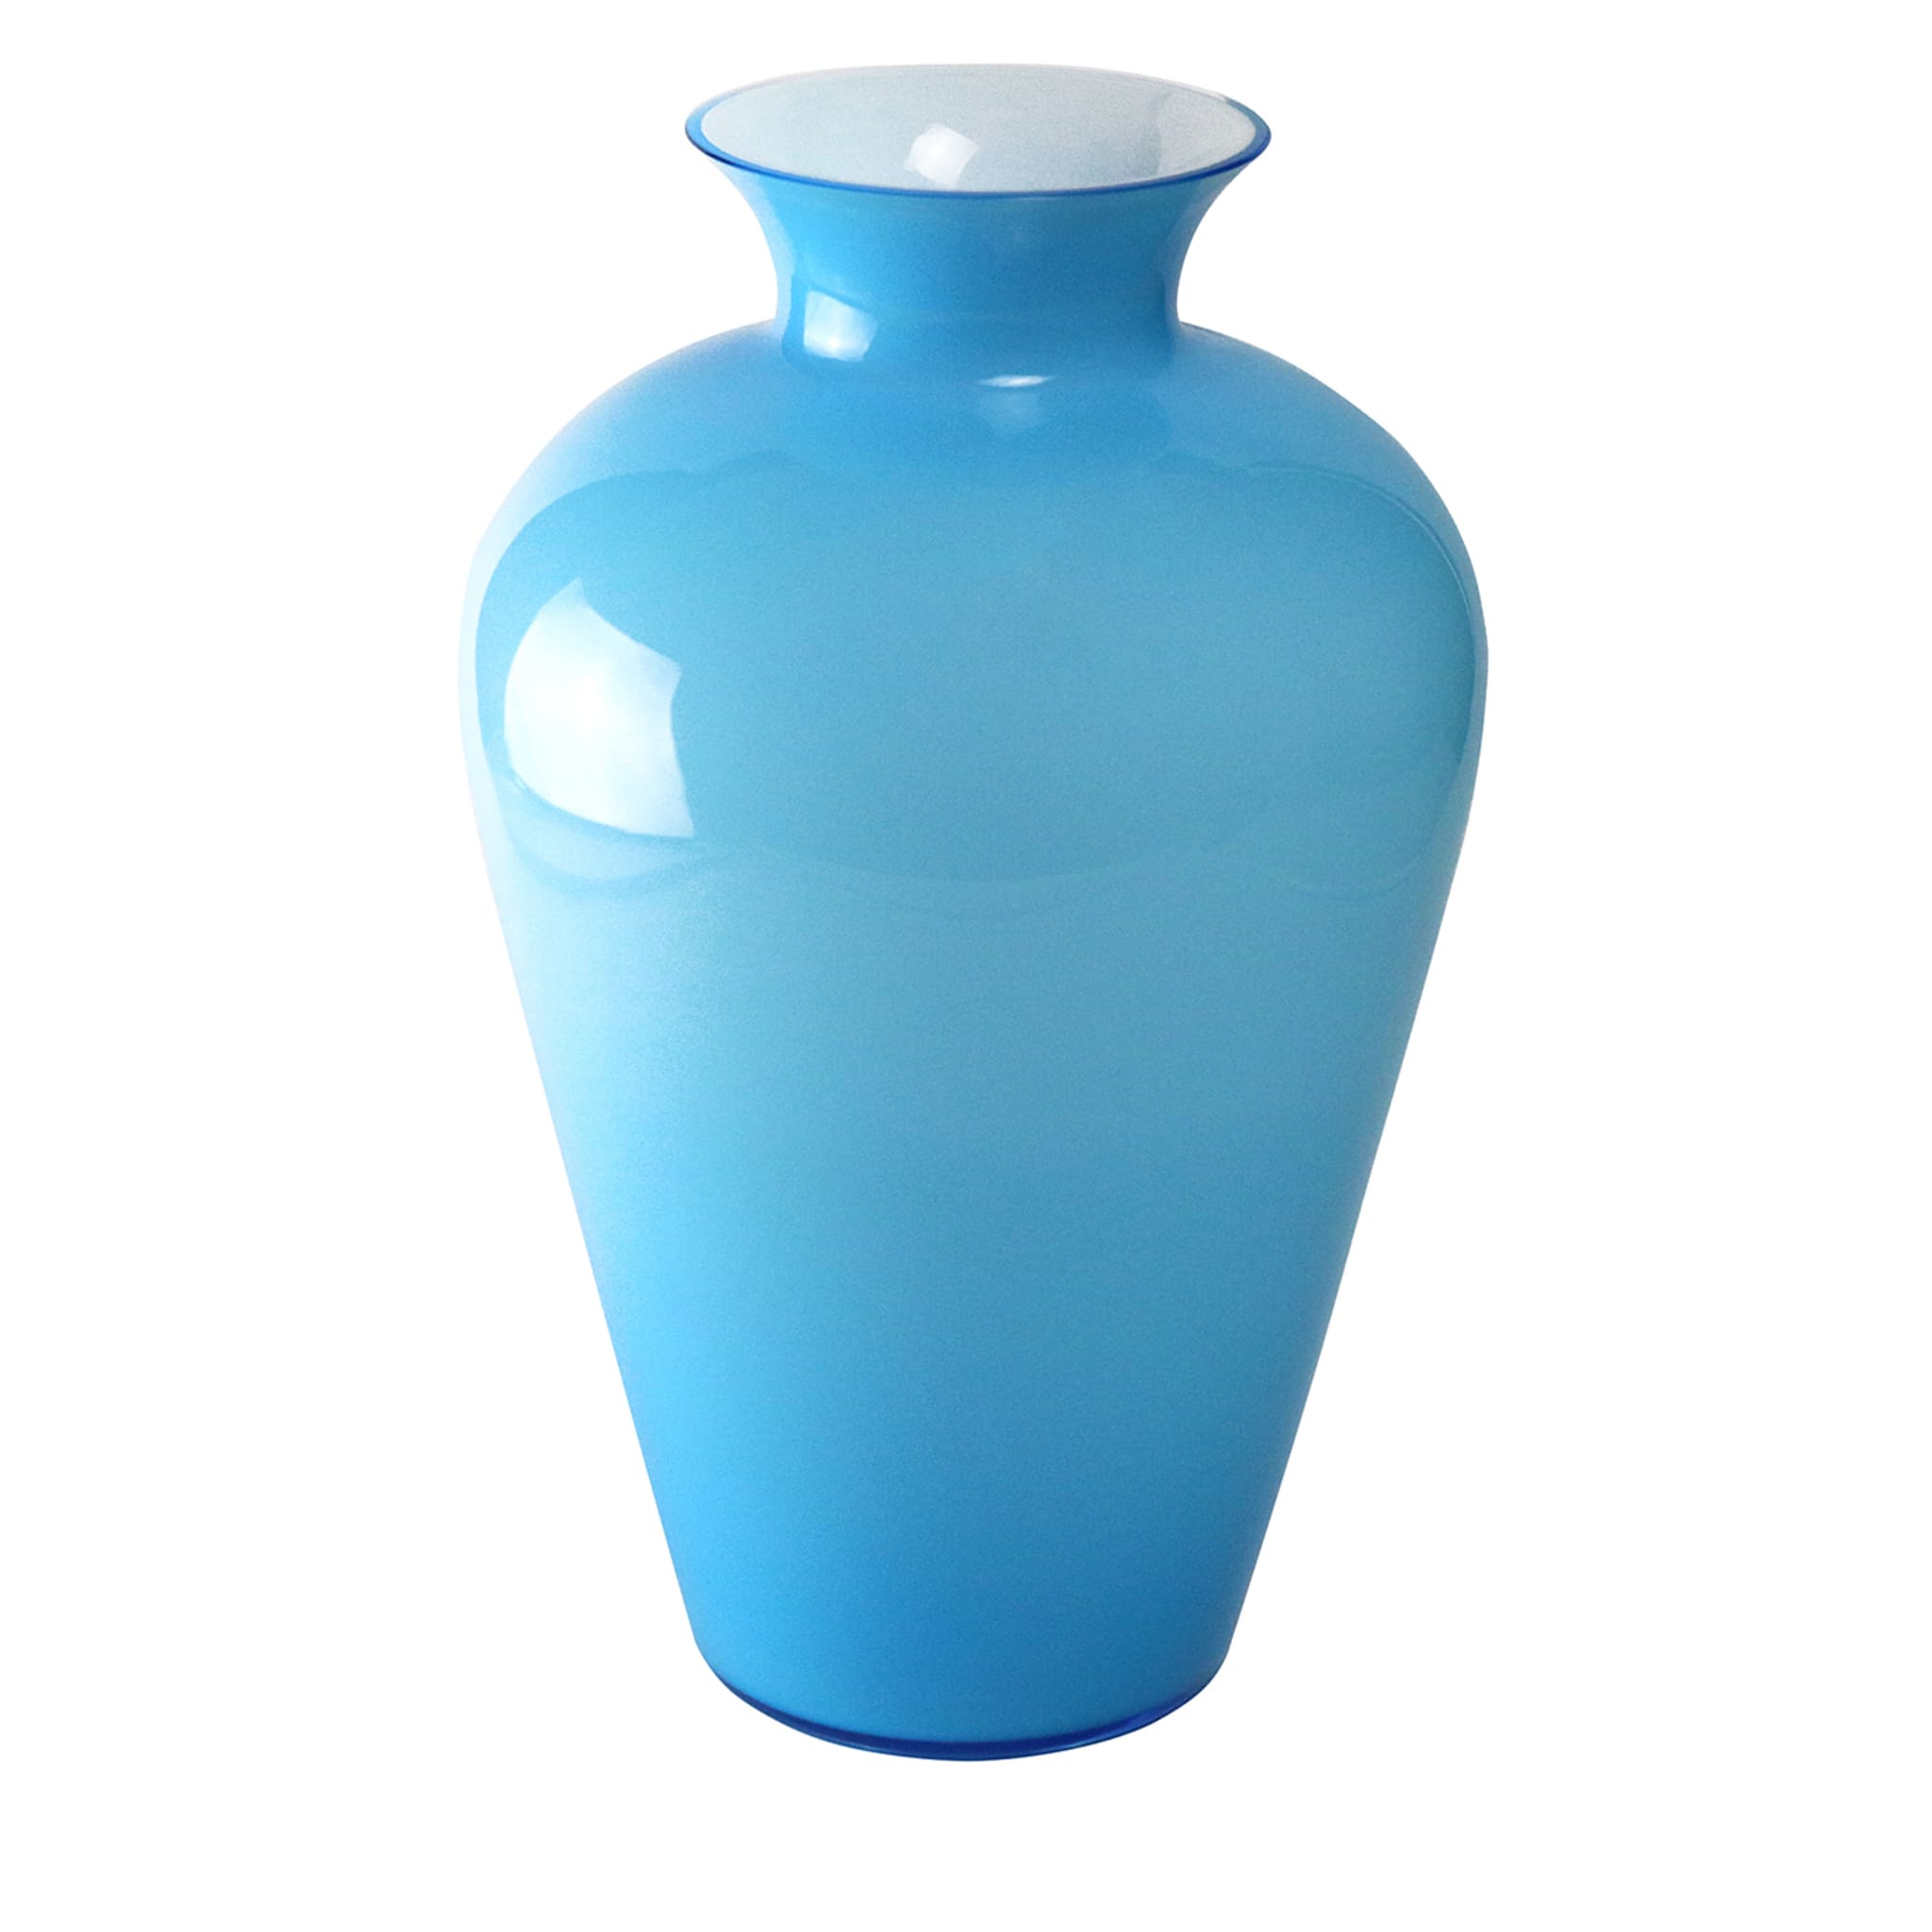 Anfora-ähnliche türkisfarbene Vase - Hauptansicht